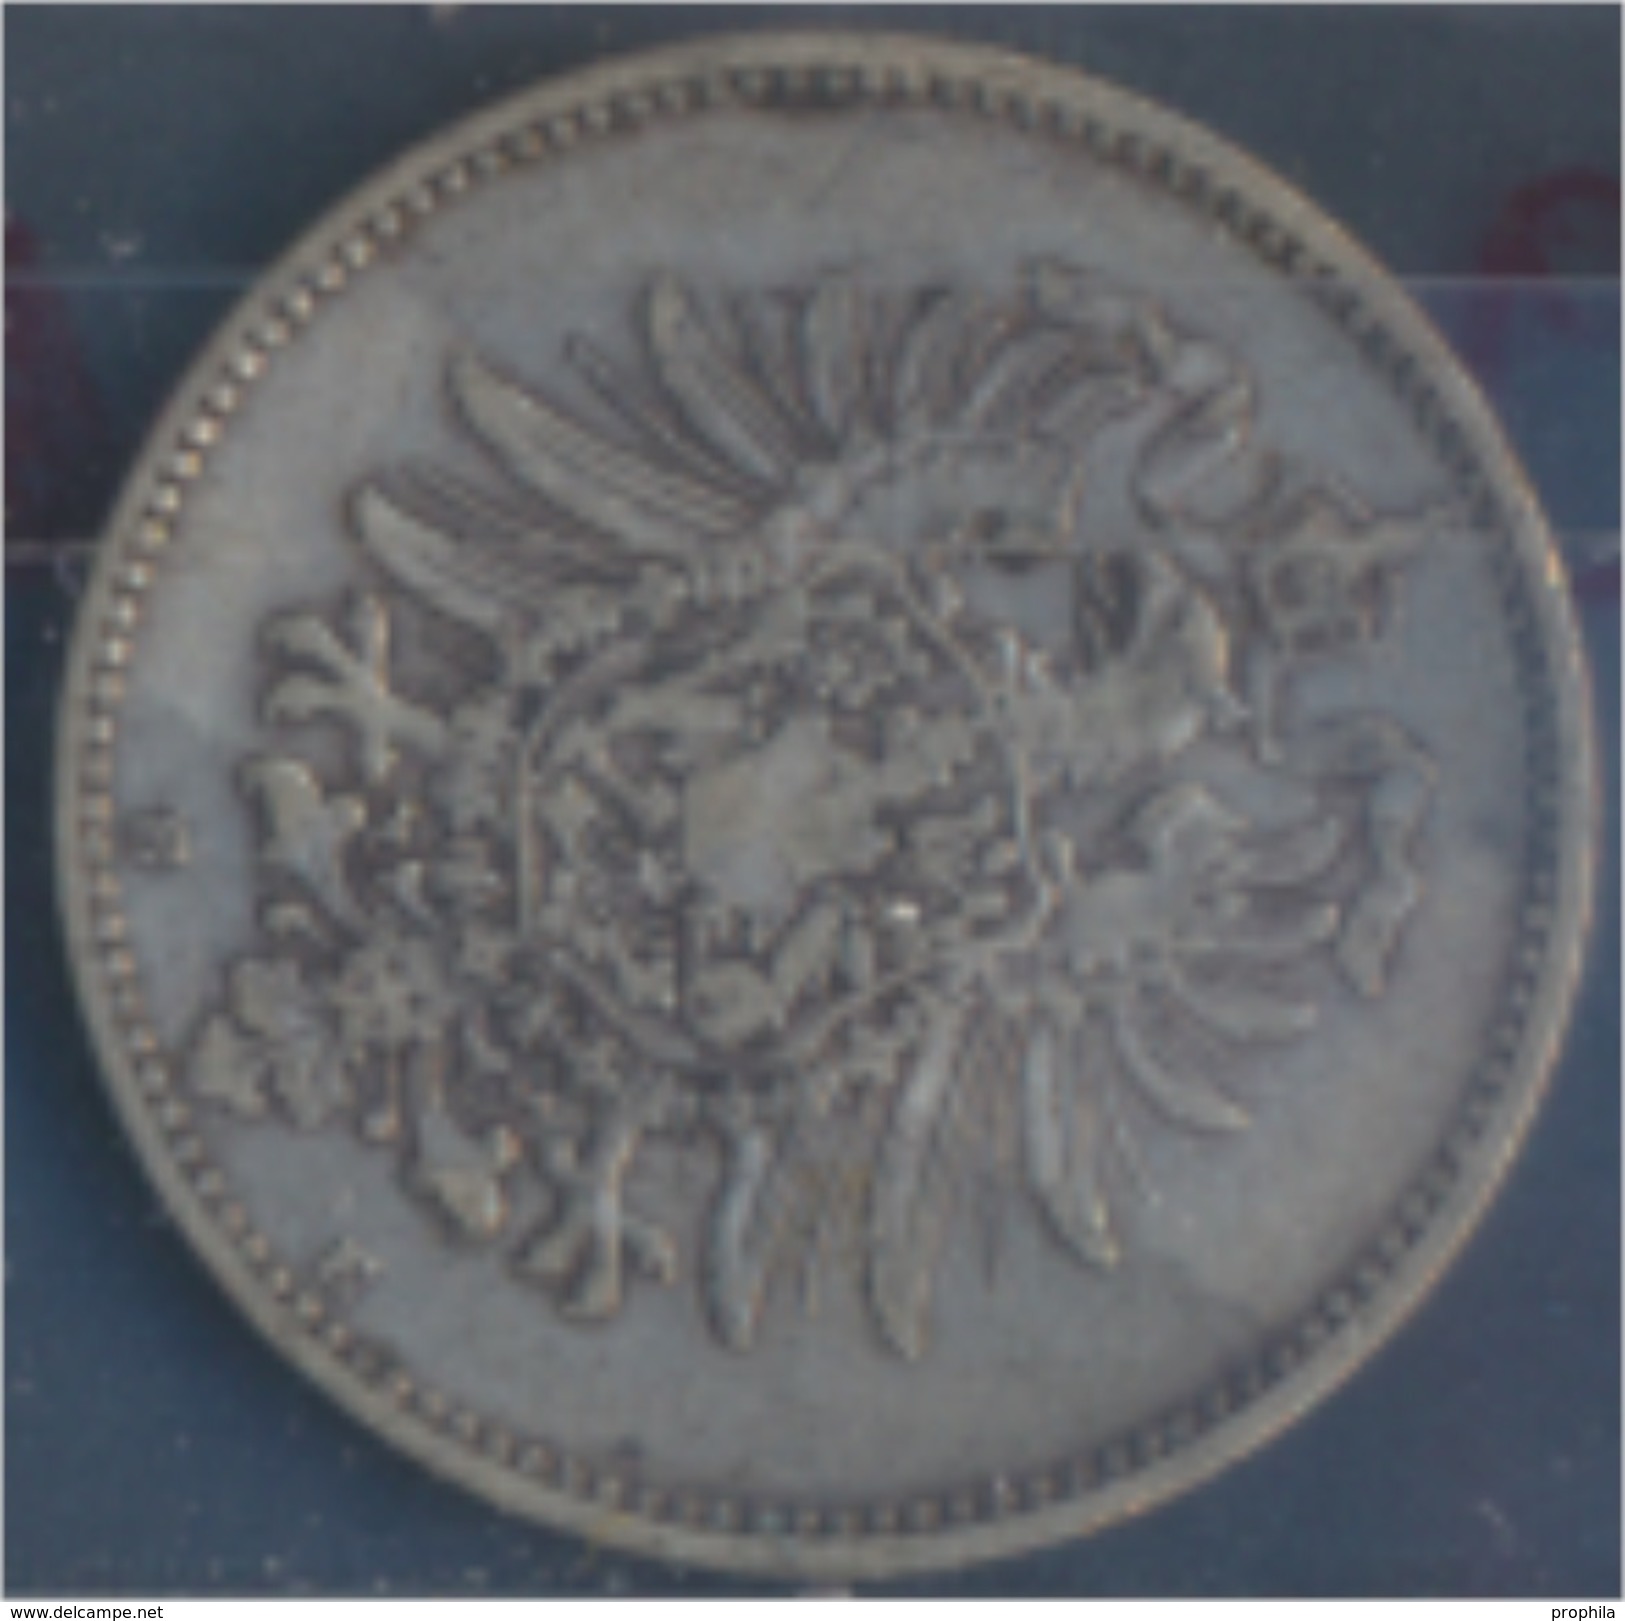 Deutsches Reich Jägernr: 9 1881 E Vorzüglich Silber 1881 1 Mark Kleiner Reichsadler (7849056 - 1 Mark